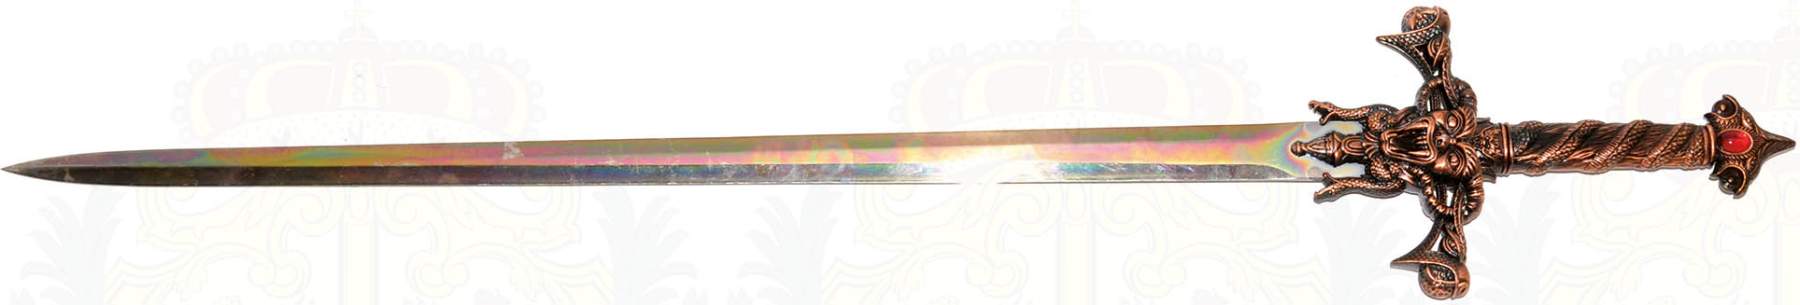 FANTASY-SCHWERT, 2-schneidige, polierte Stahlklinge, L. 79 cm, kupferfarb., plastisch verzierter